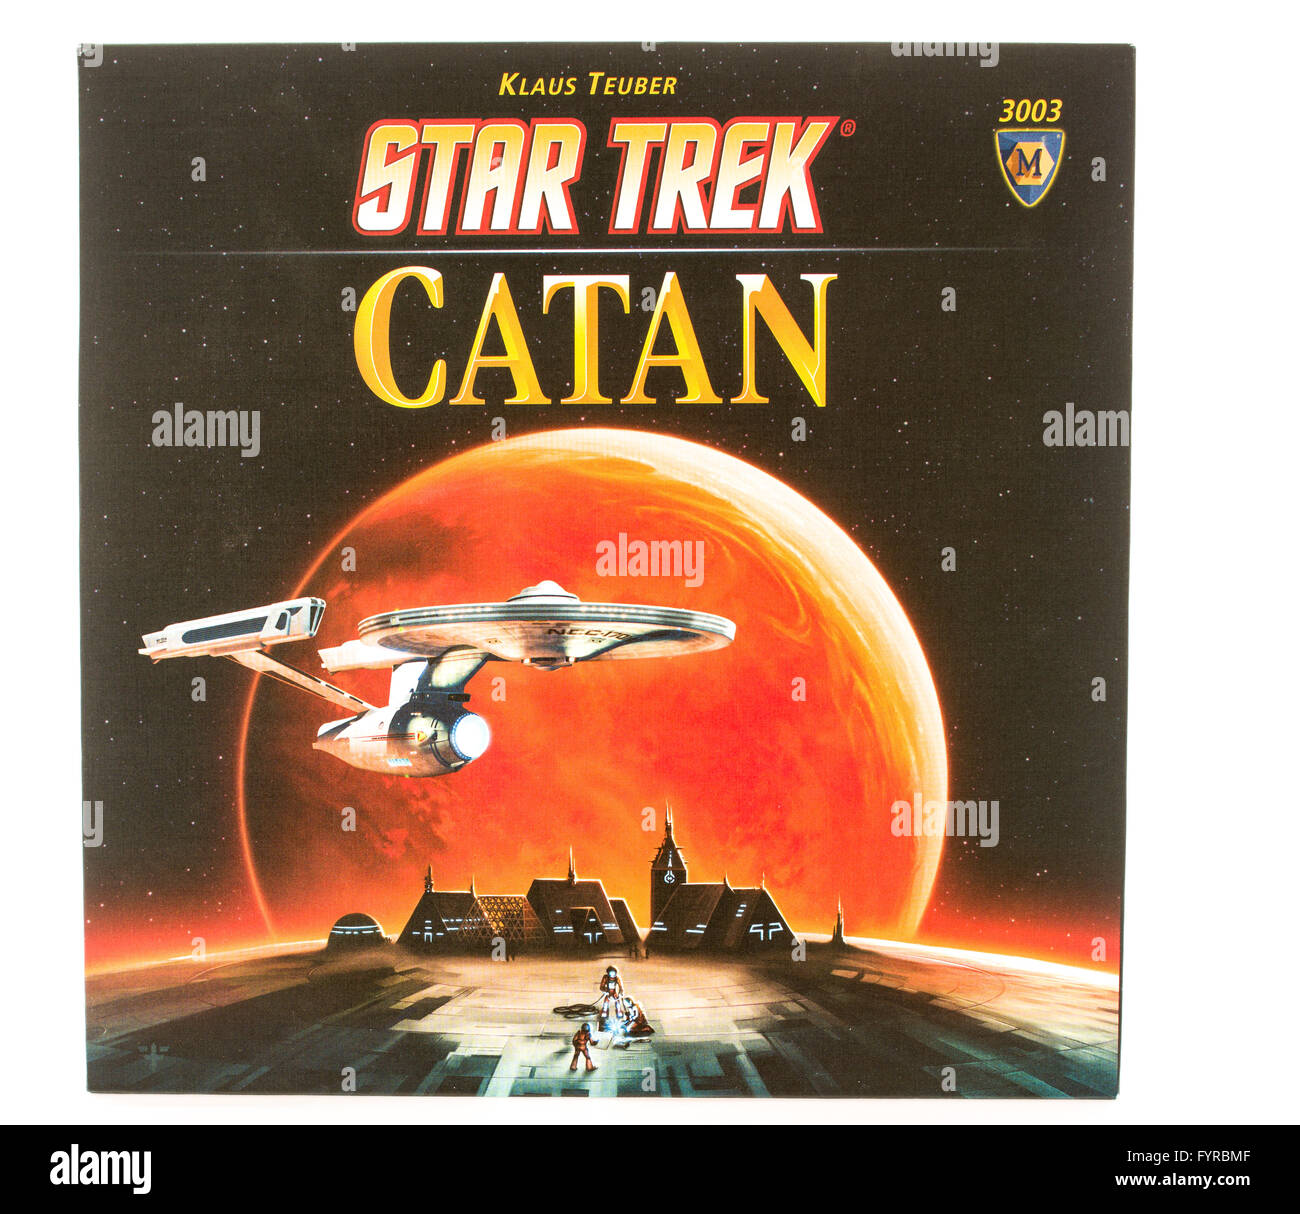 Winneconni, WI - 12. Juni 2015: Box des beliebten Brettspiels von Catan in Star Trek-Ausgabe. Stockfoto